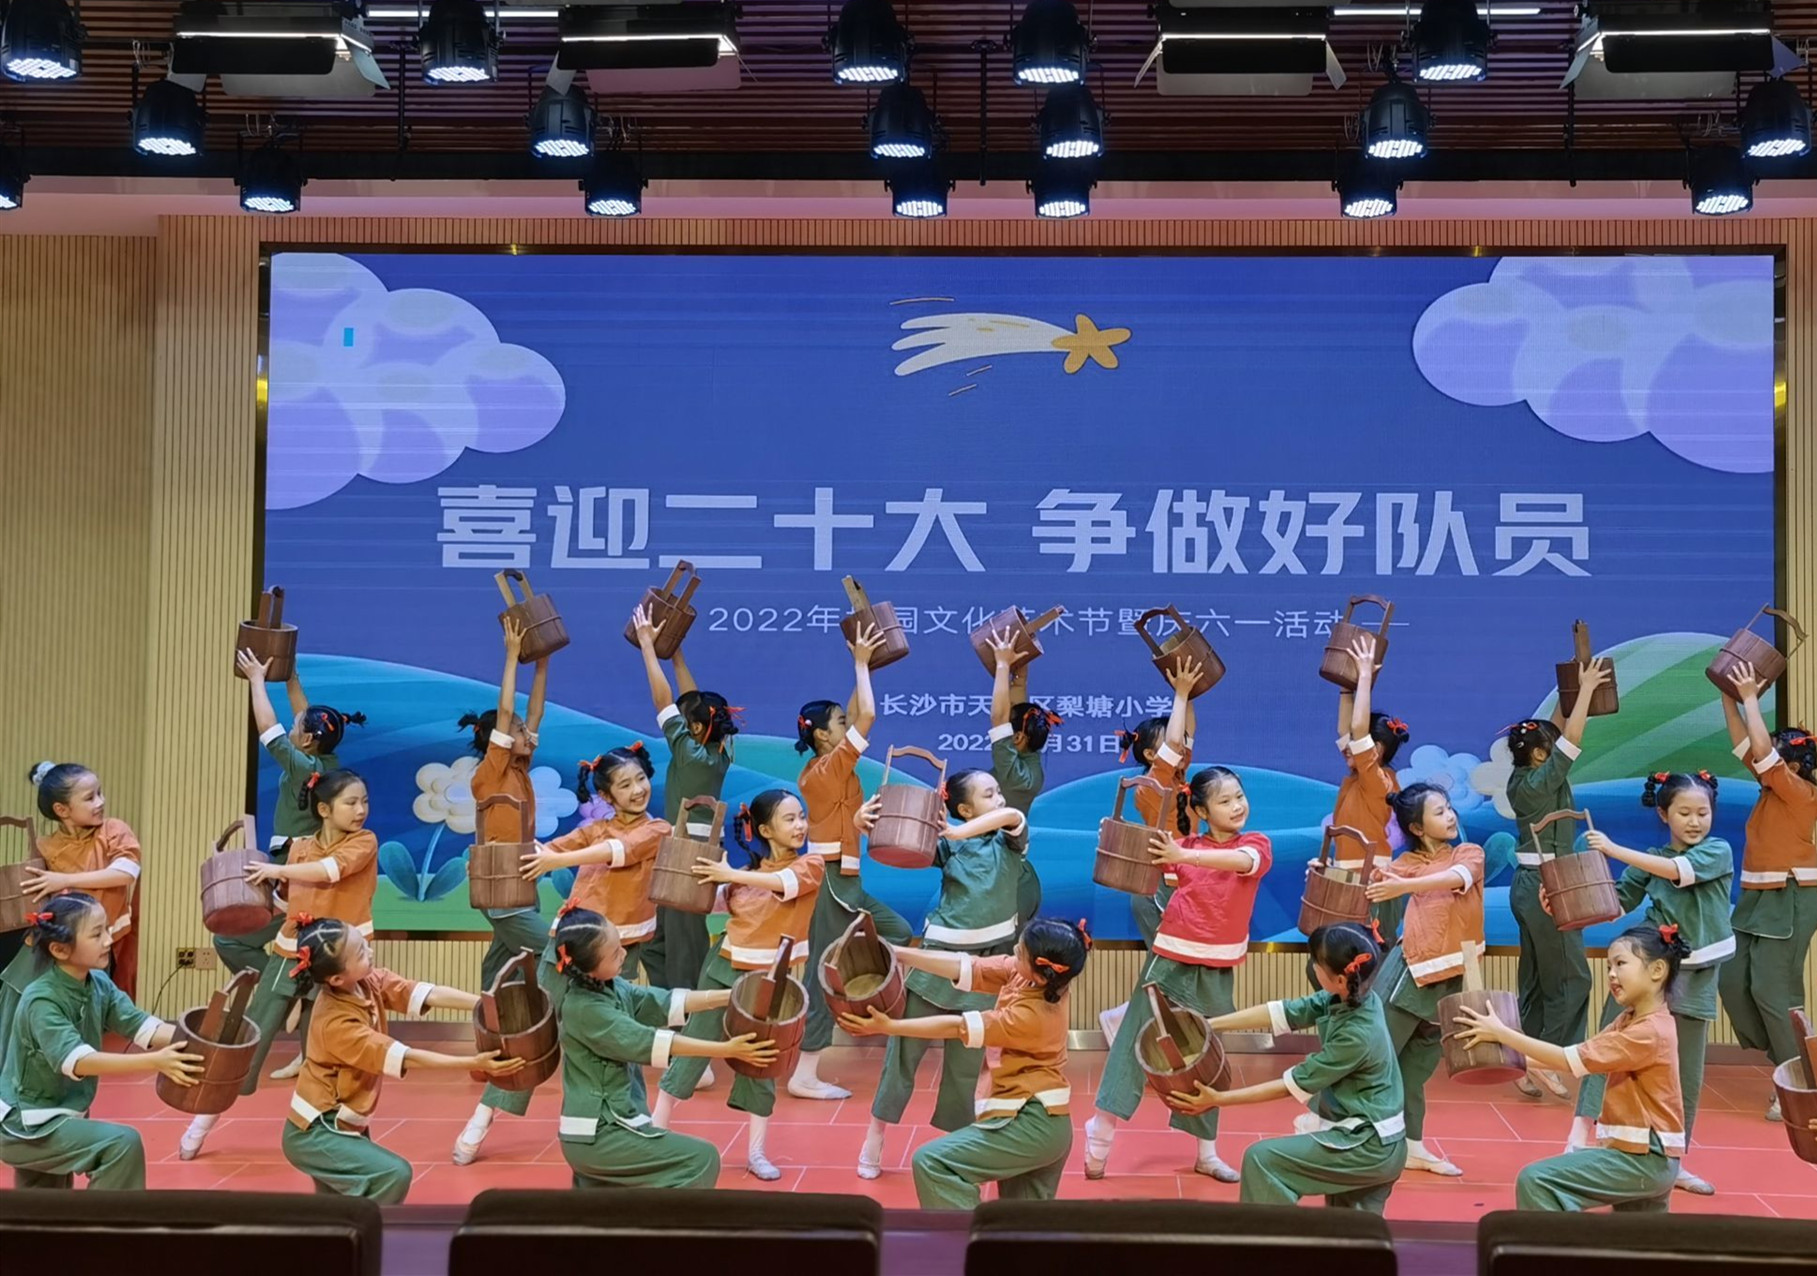 学校舞蹈队表演自编舞蹈《麻花辫》。